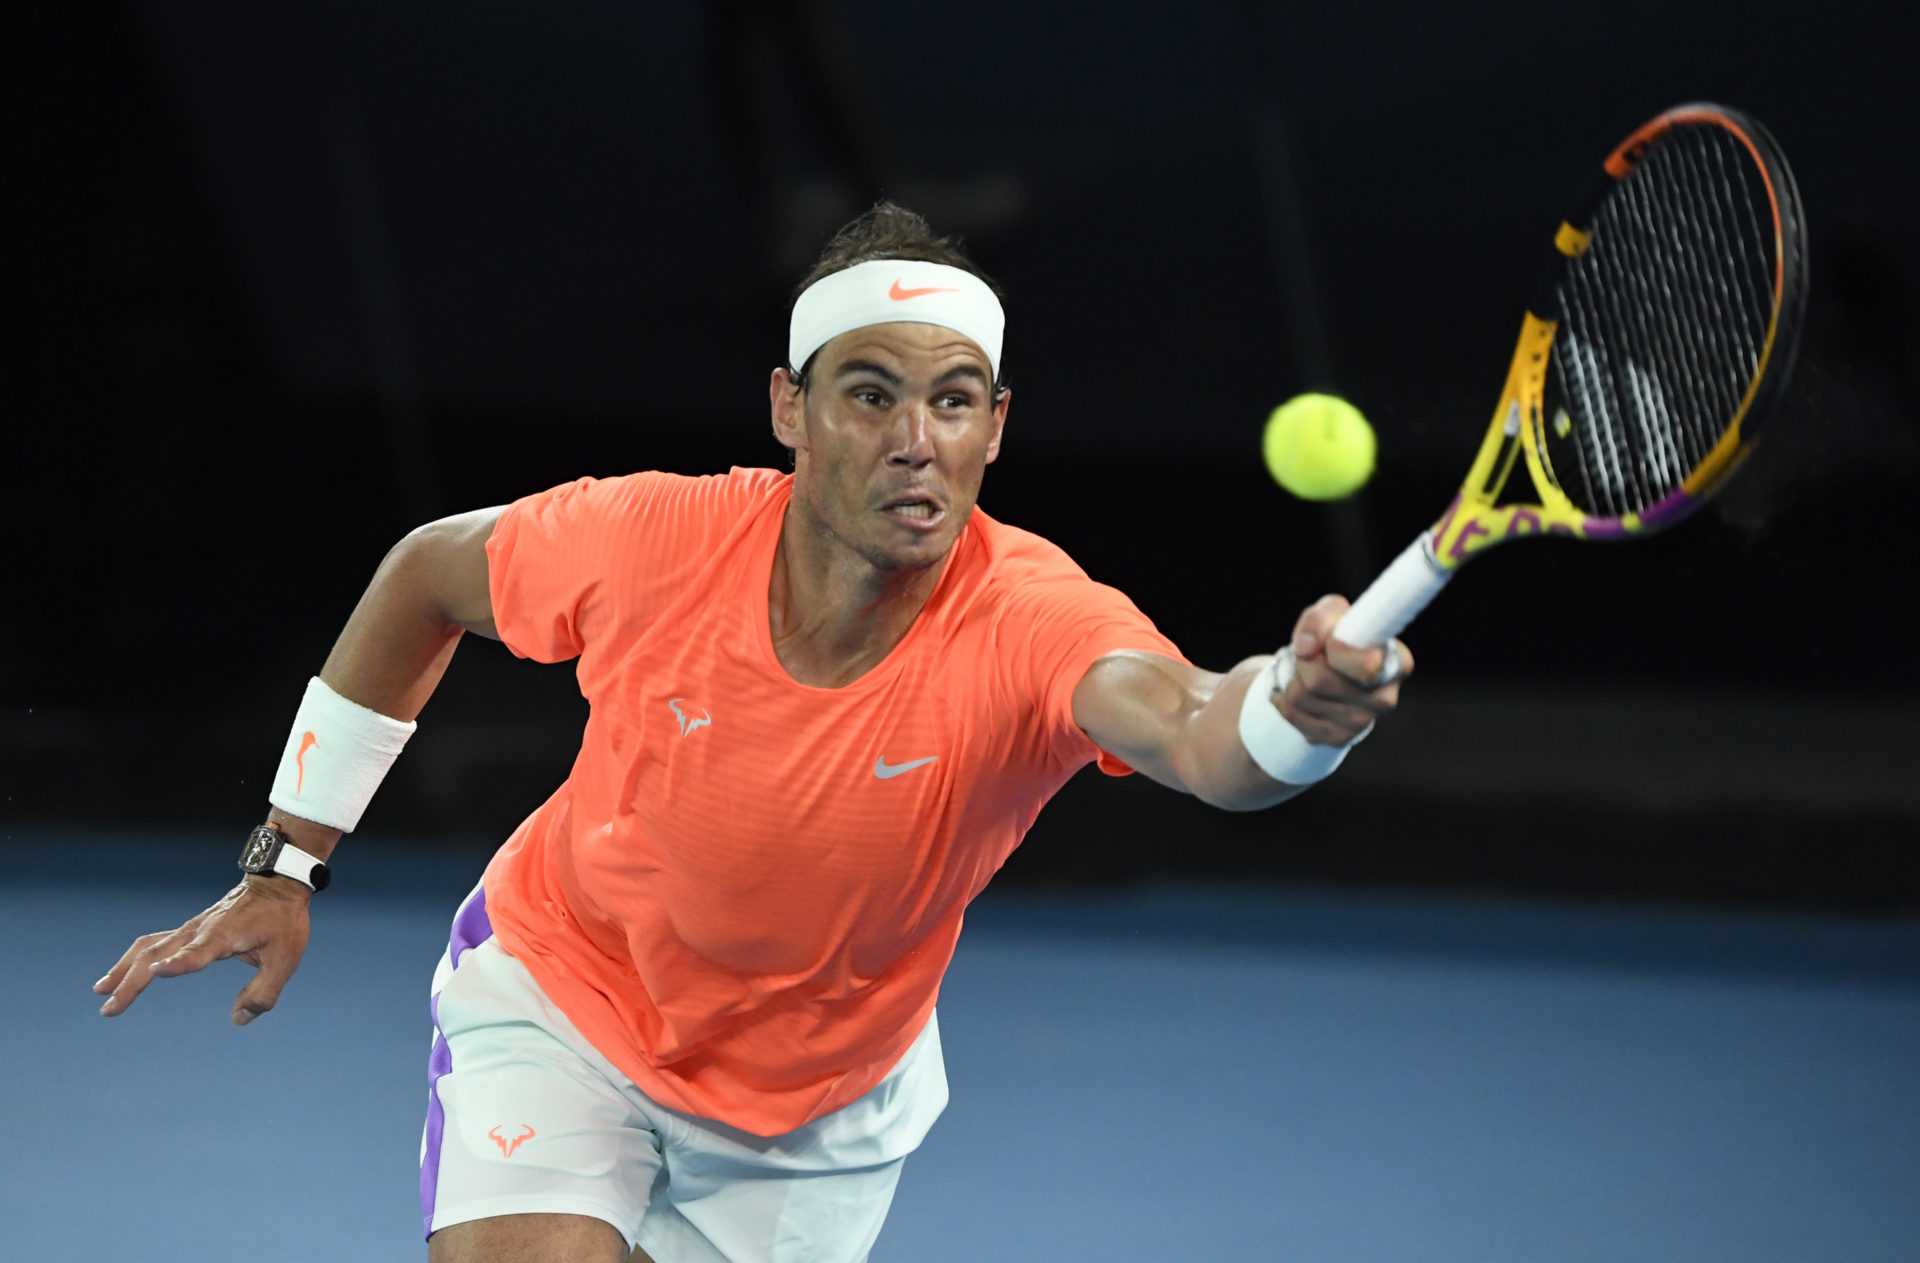 «Toujours un honneur»: Rafael Nadal remporte une deuxième nomination consécutive pour Laureus Sportsman of the Year